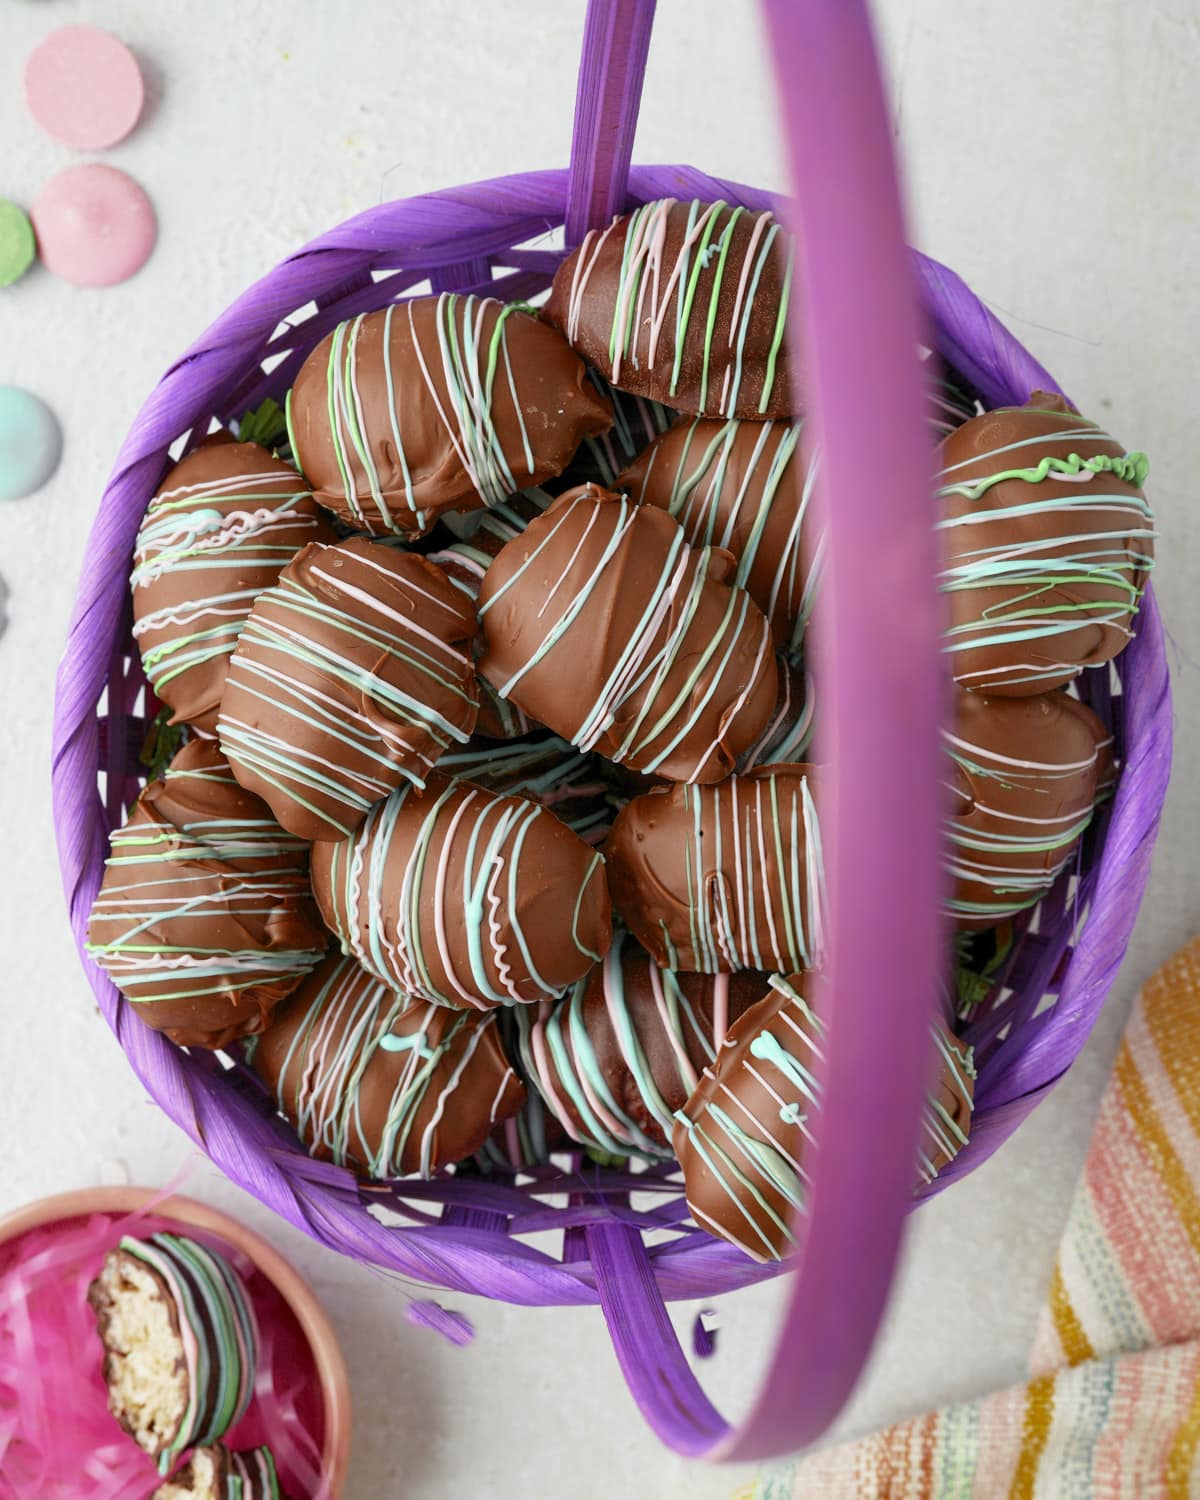 Chocolate Easter eggs in purple basket